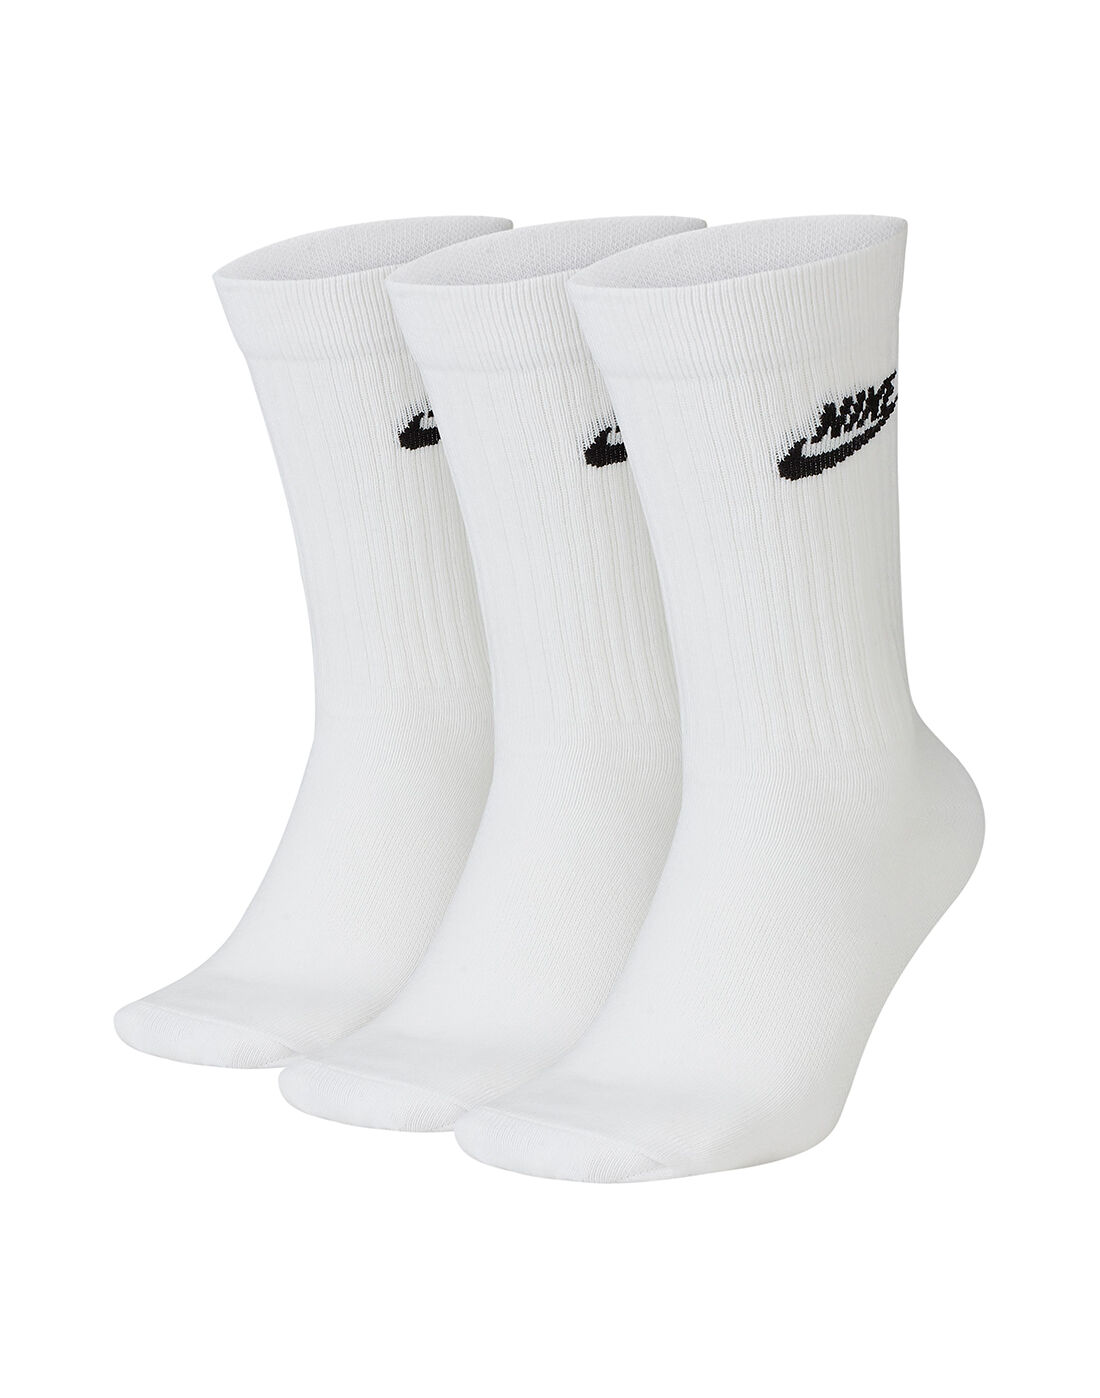 women's nike socks white